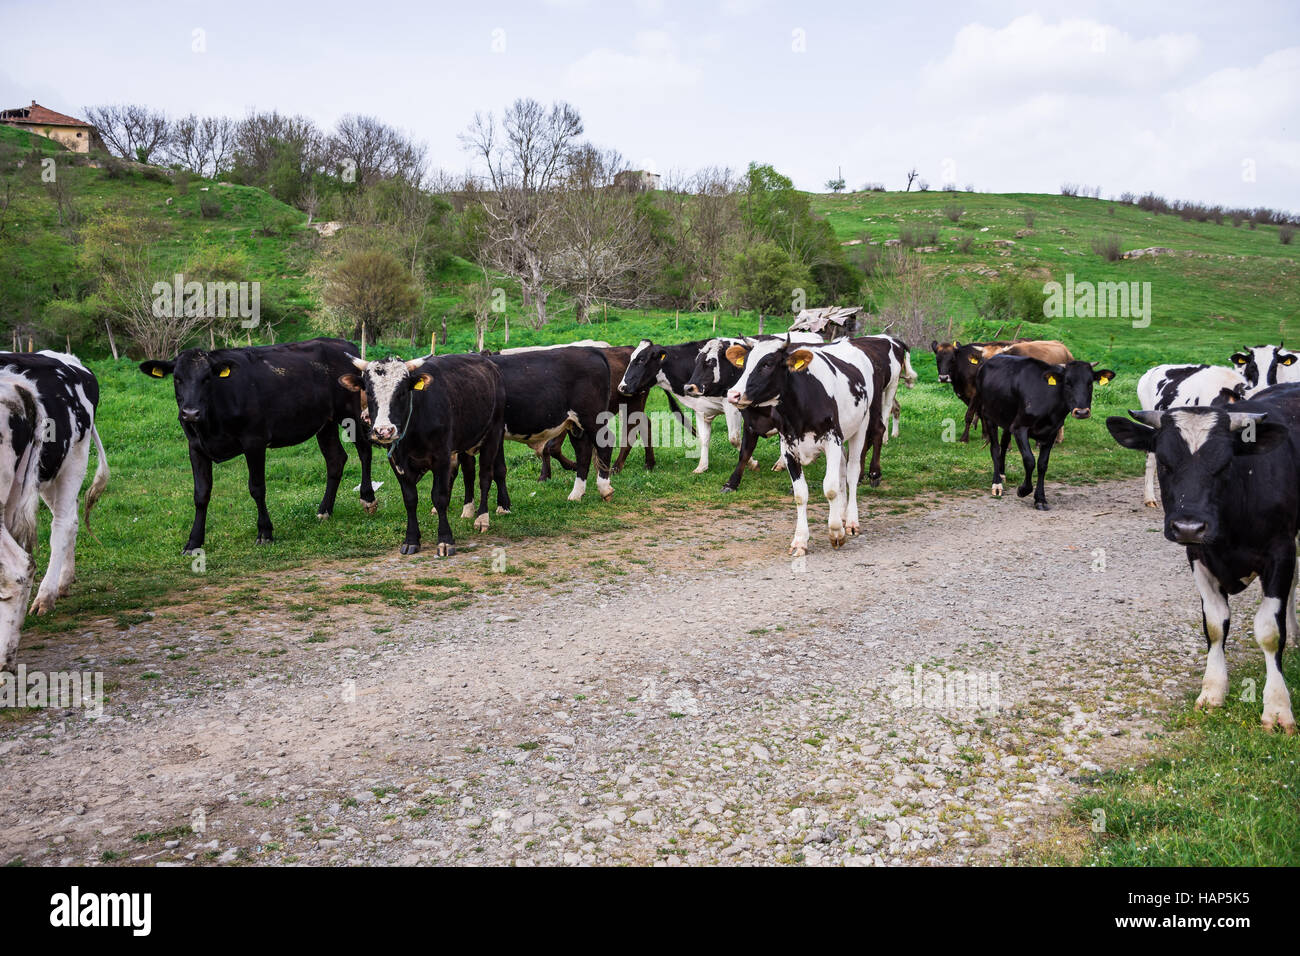 Il bulgaro marrone nero bianco vacche domestiche Bos Taurus mammiferi europeo - 09-04-2016 - Bistrets, Bulgaria Foto Stock